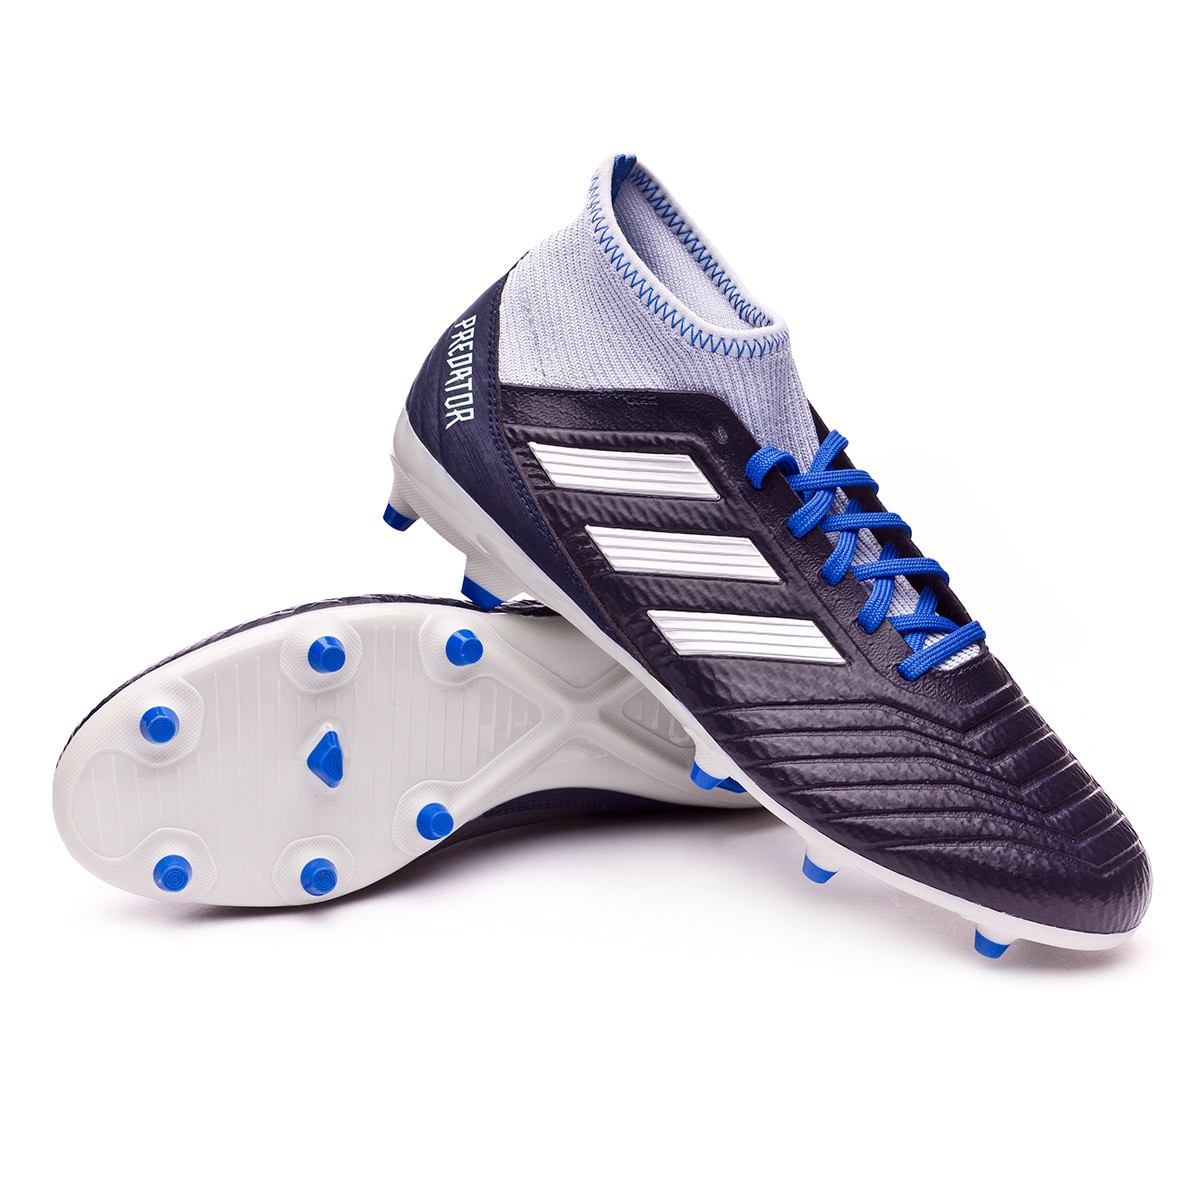 adidas predator 18.3 fg blue